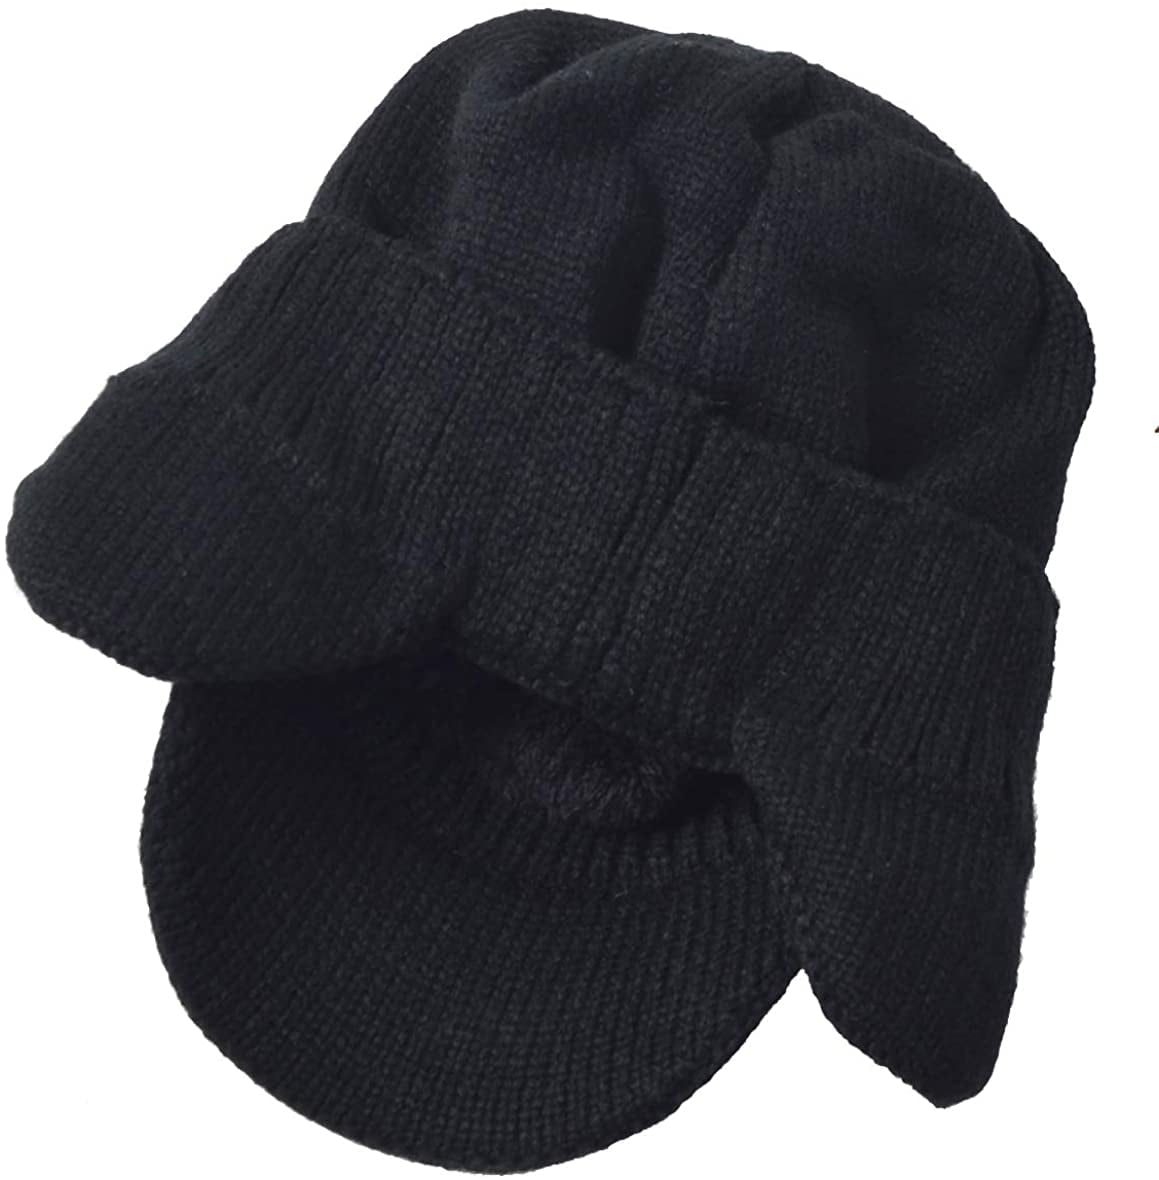 Men's Knit Beanie Visor Skullcap Cadet Newsboy Cap Ski Winter Hat 